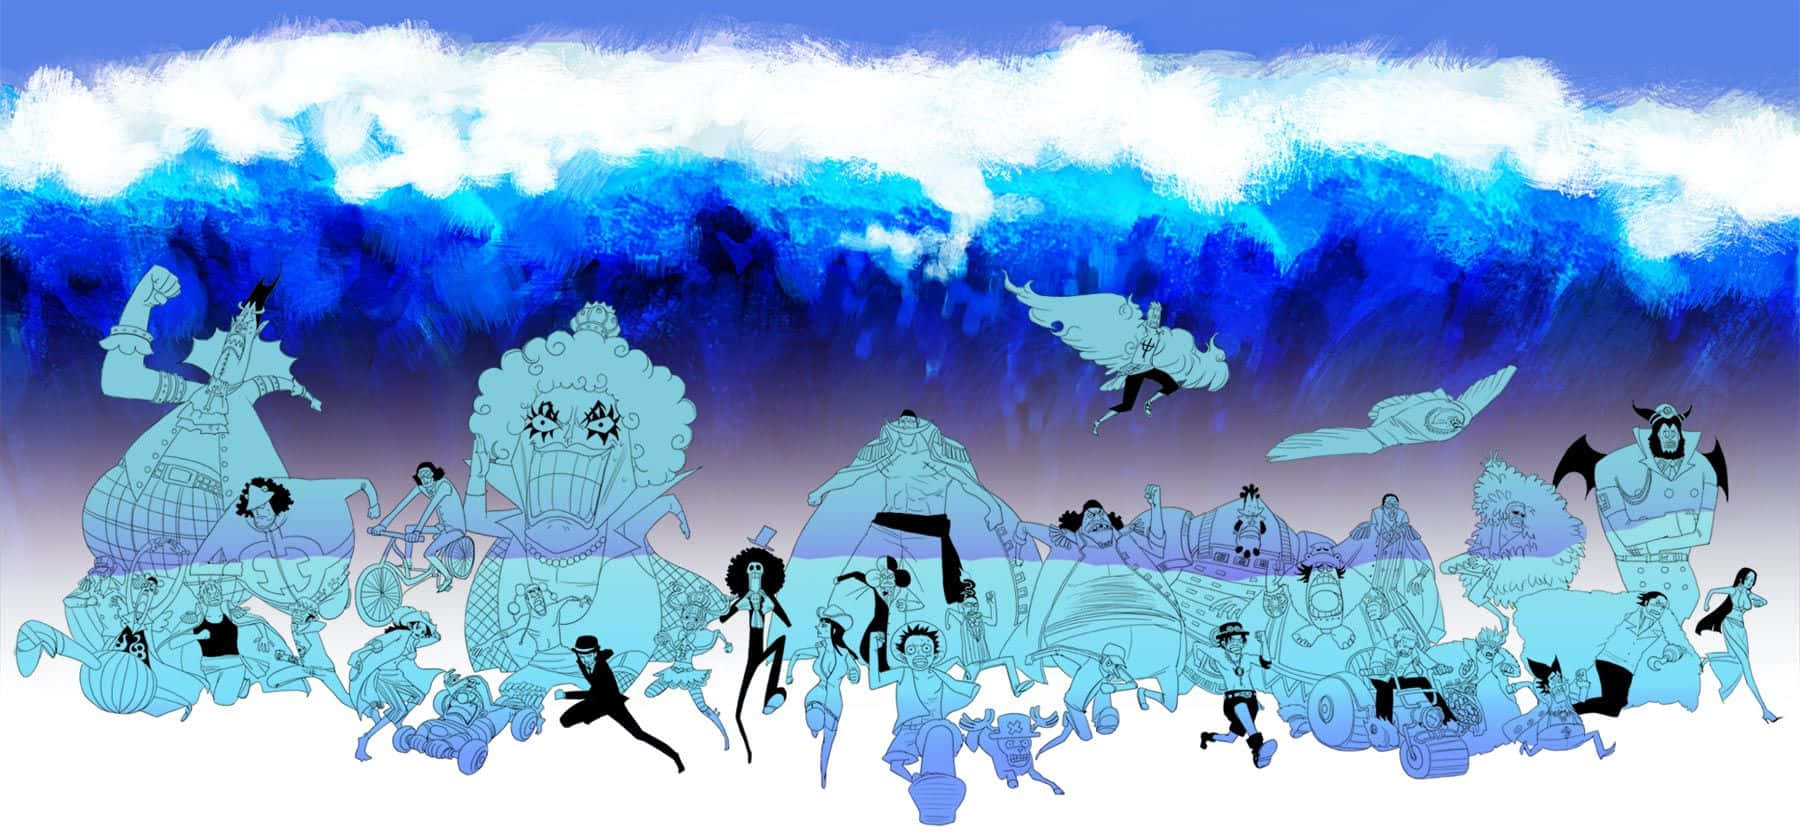 Enel,el Dios De Skypiea En One Piece, Adoptando Una Pose Divina. Fondo de pantalla